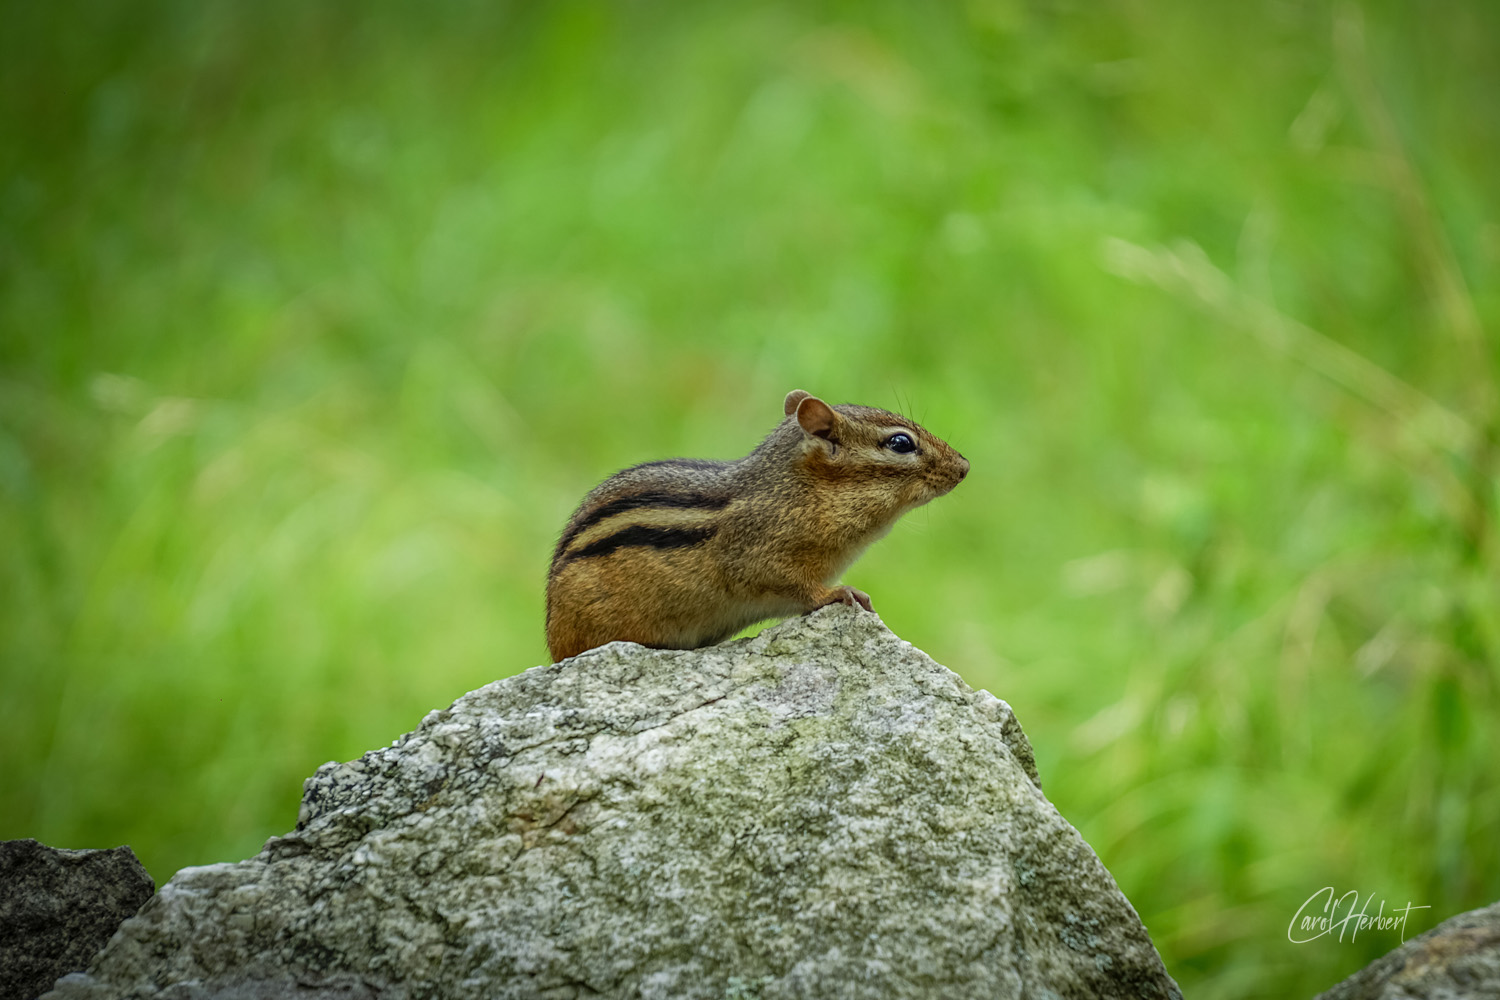 A chipmunk sitting on a rock